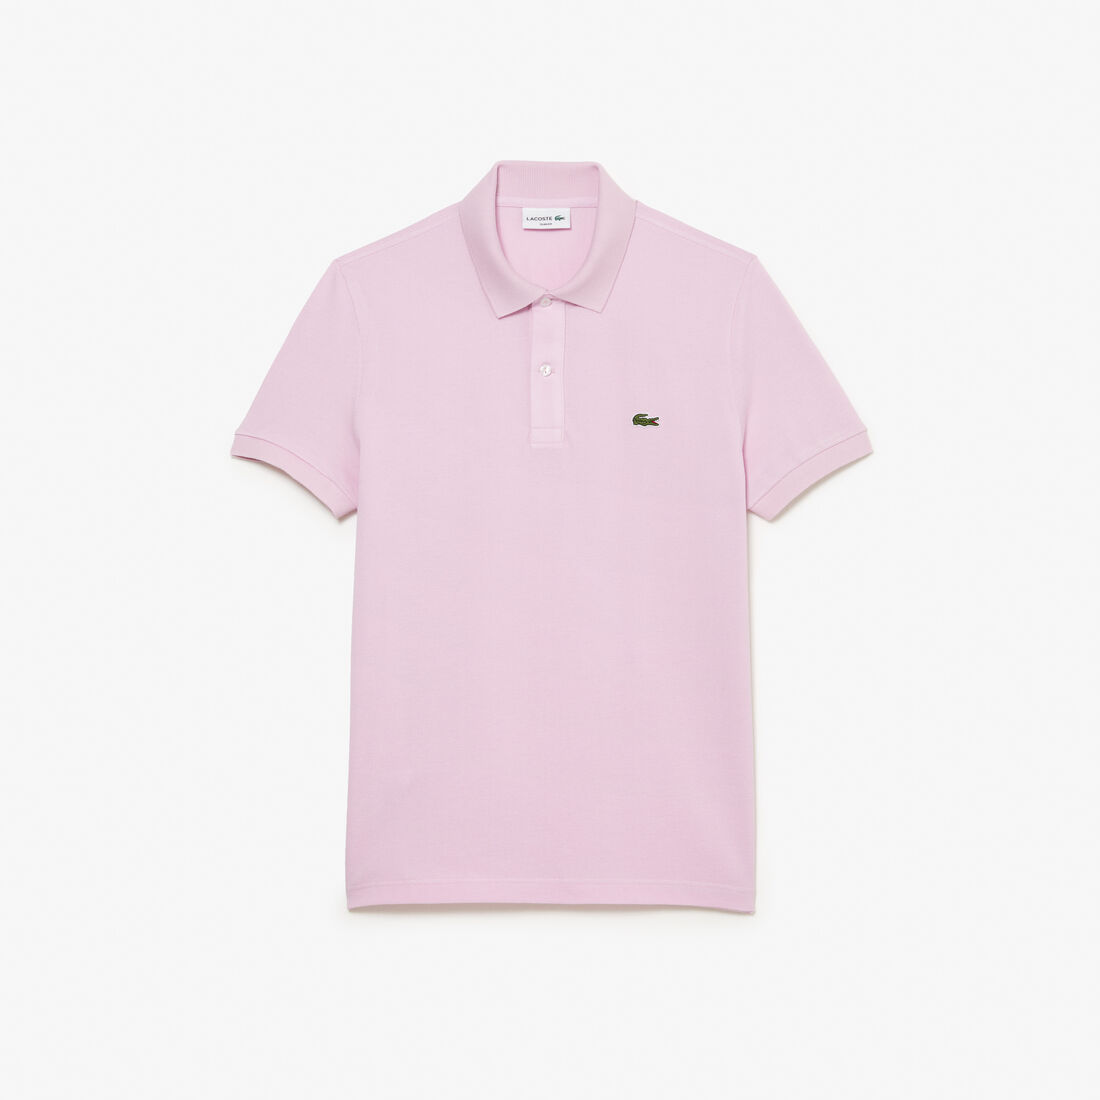 Buy Original L.12.12 Slim Fit Petit Pique Cotton Polo Shirt | Lacoste UAE